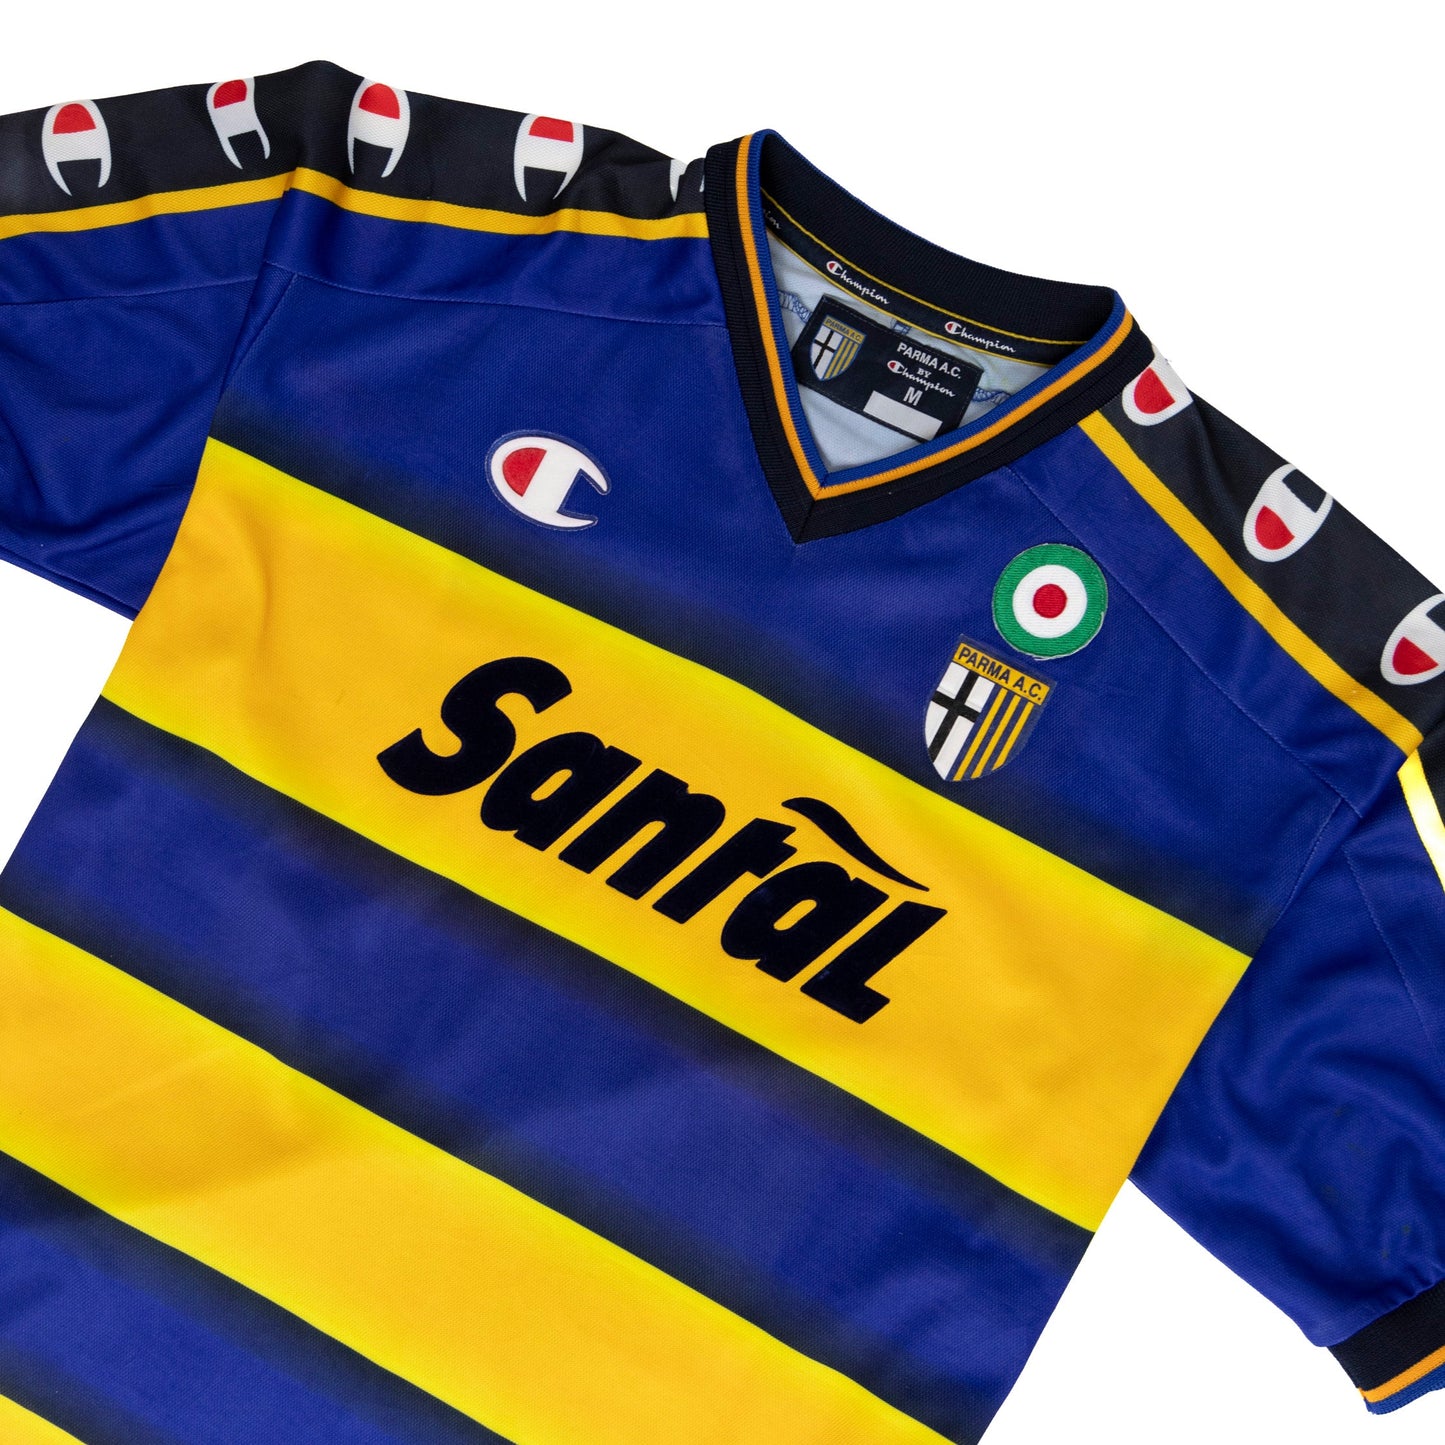 Parma x Champion 2002/03 European Home Shirt